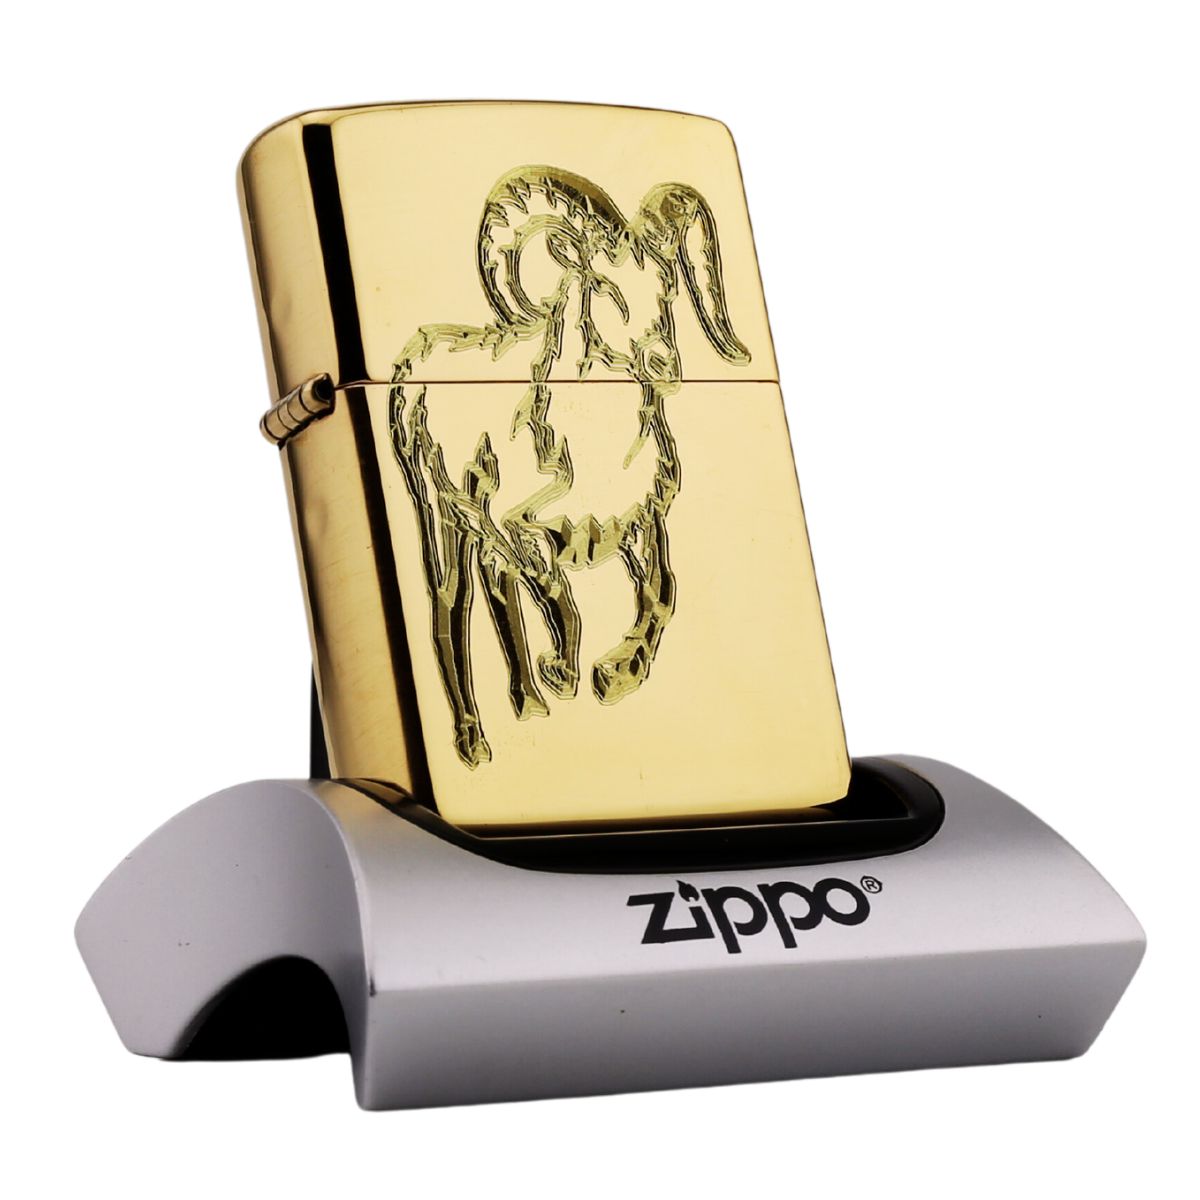 Zippo Khắc Cao Cấp Tuổi Mùi đẳng cấp